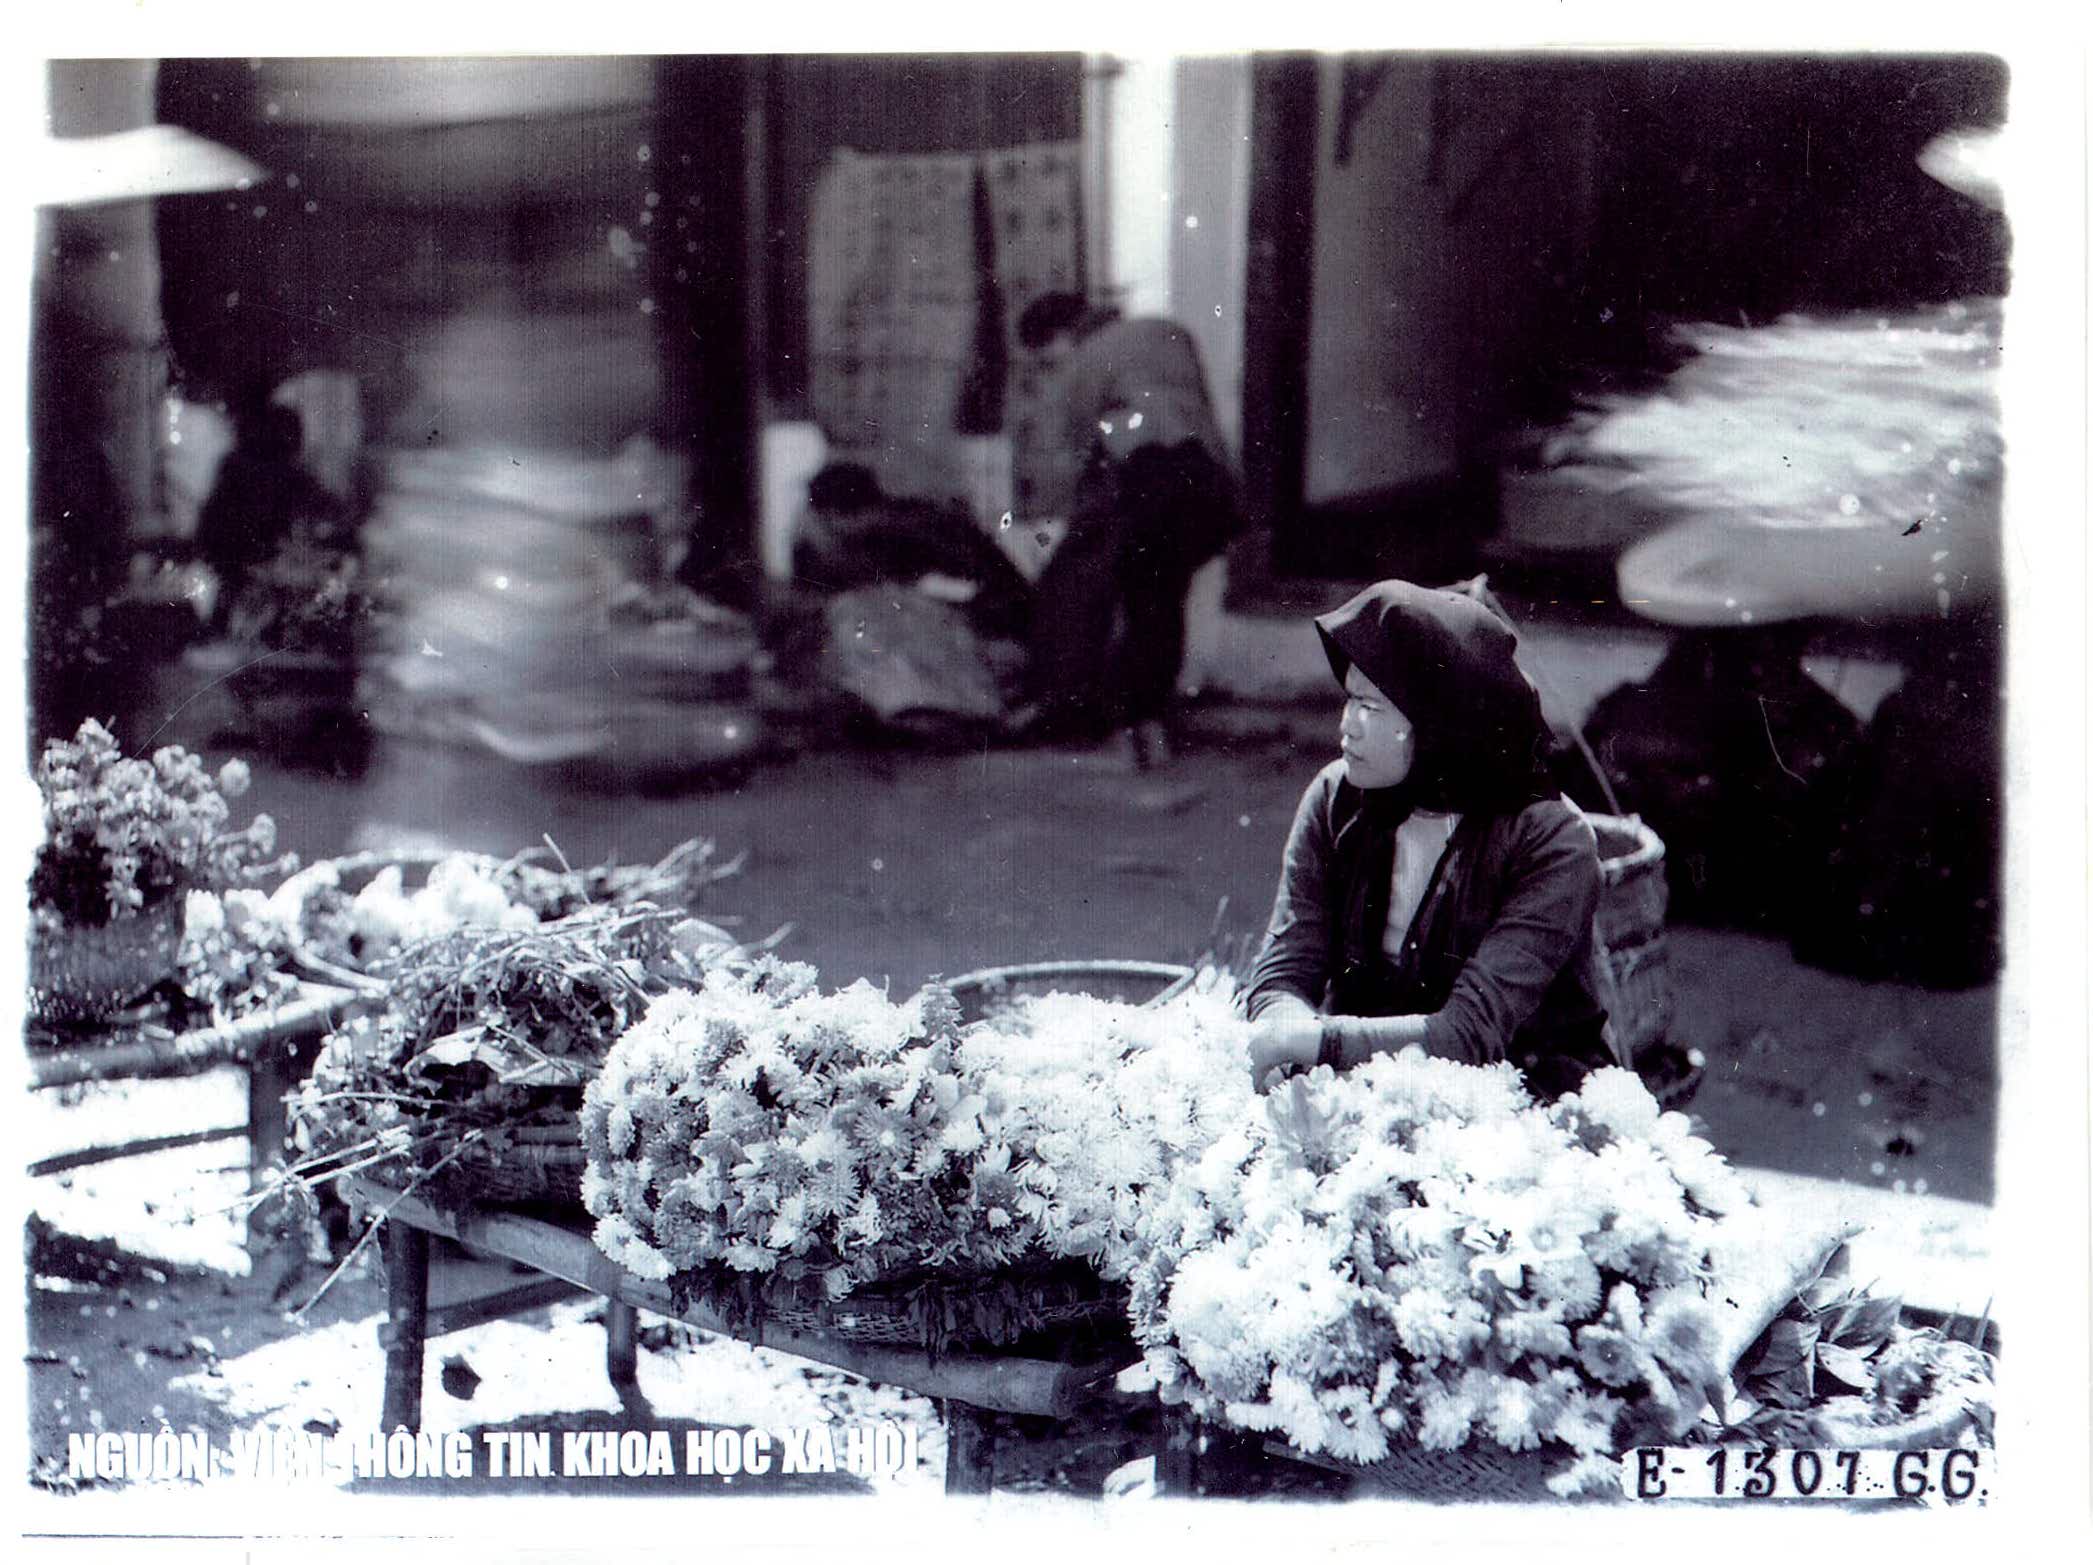 Chợ và phố chợ Hà Nội trăm năm trước qua tư liệu ảnh - 9